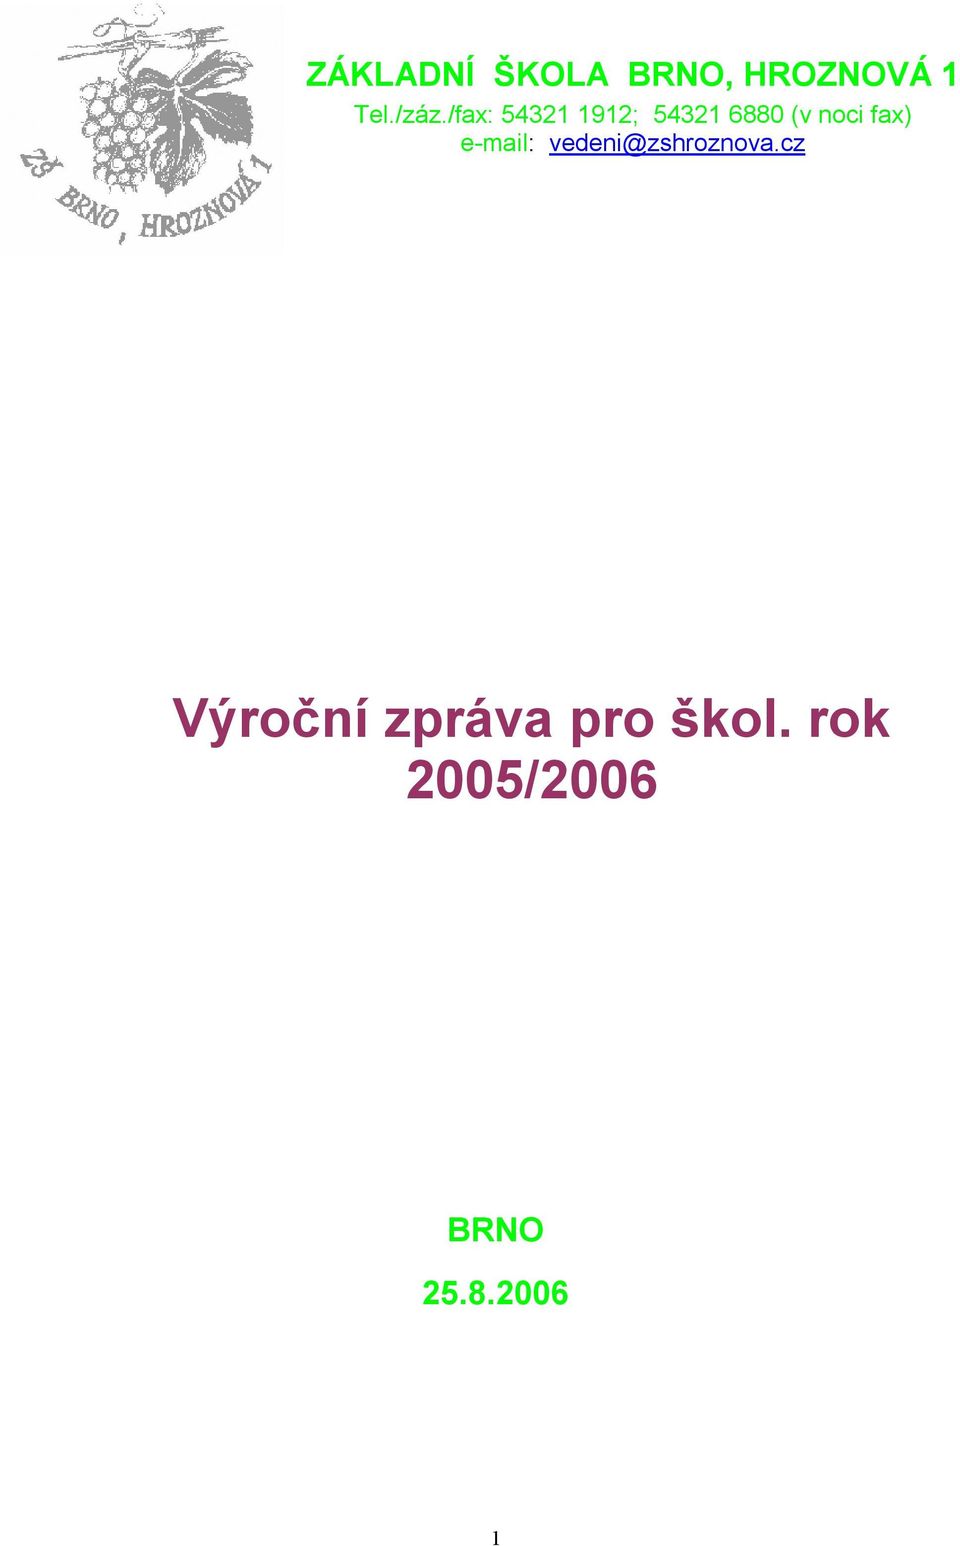 e-mail: vedeni@zshroznova.